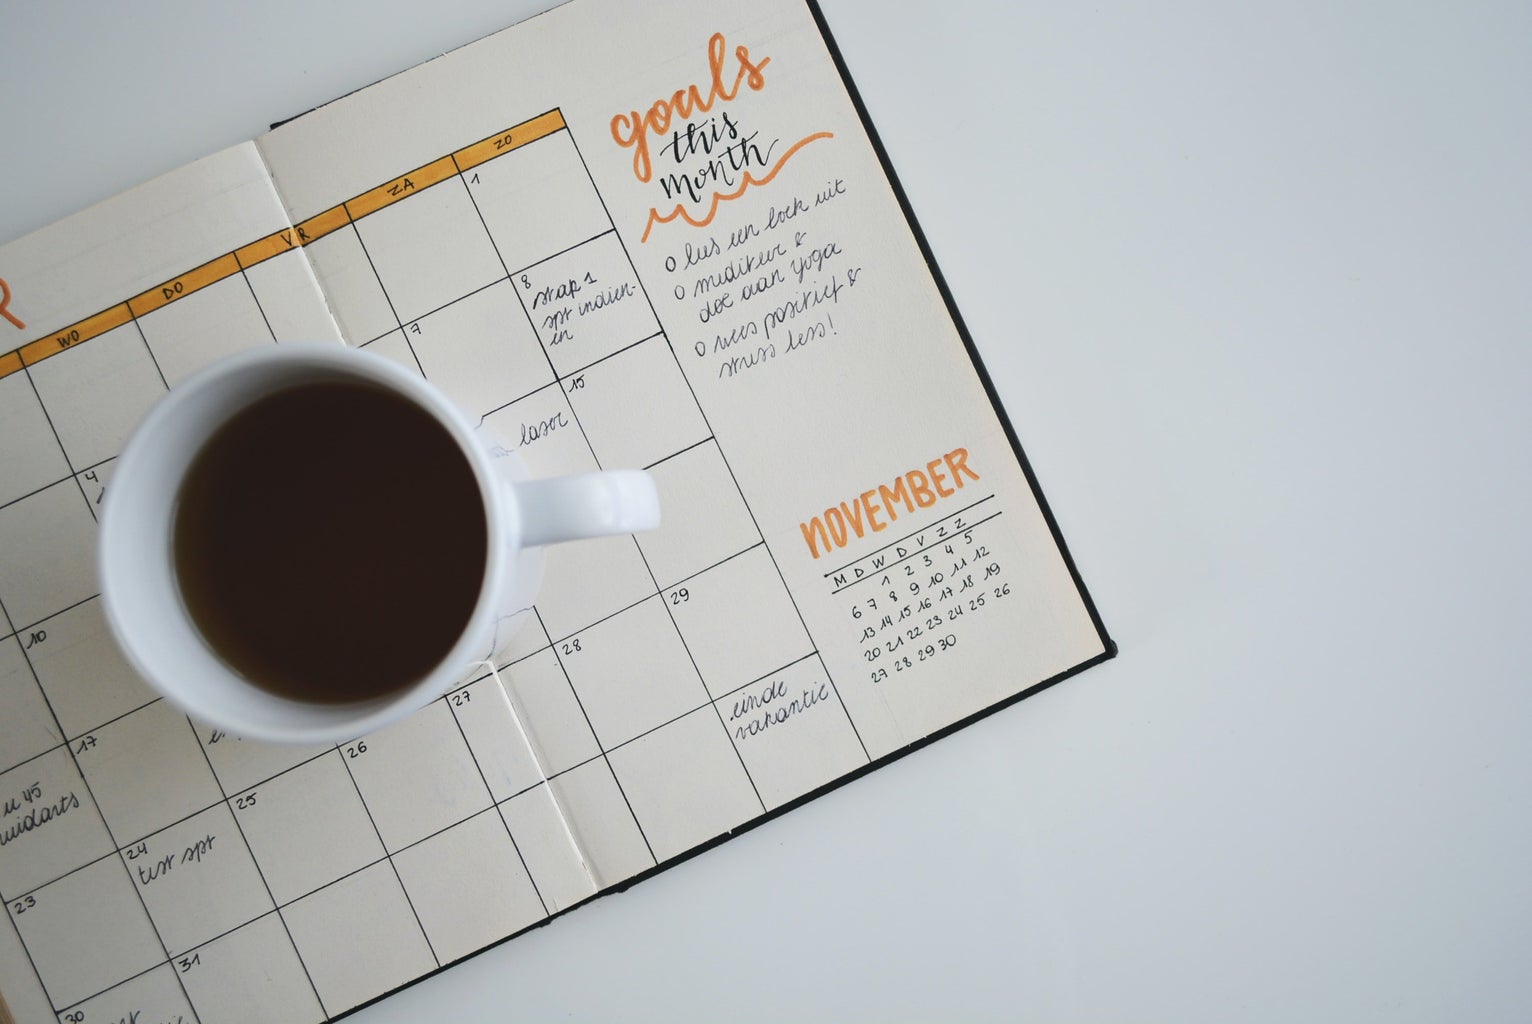 goals, coffee, notebook